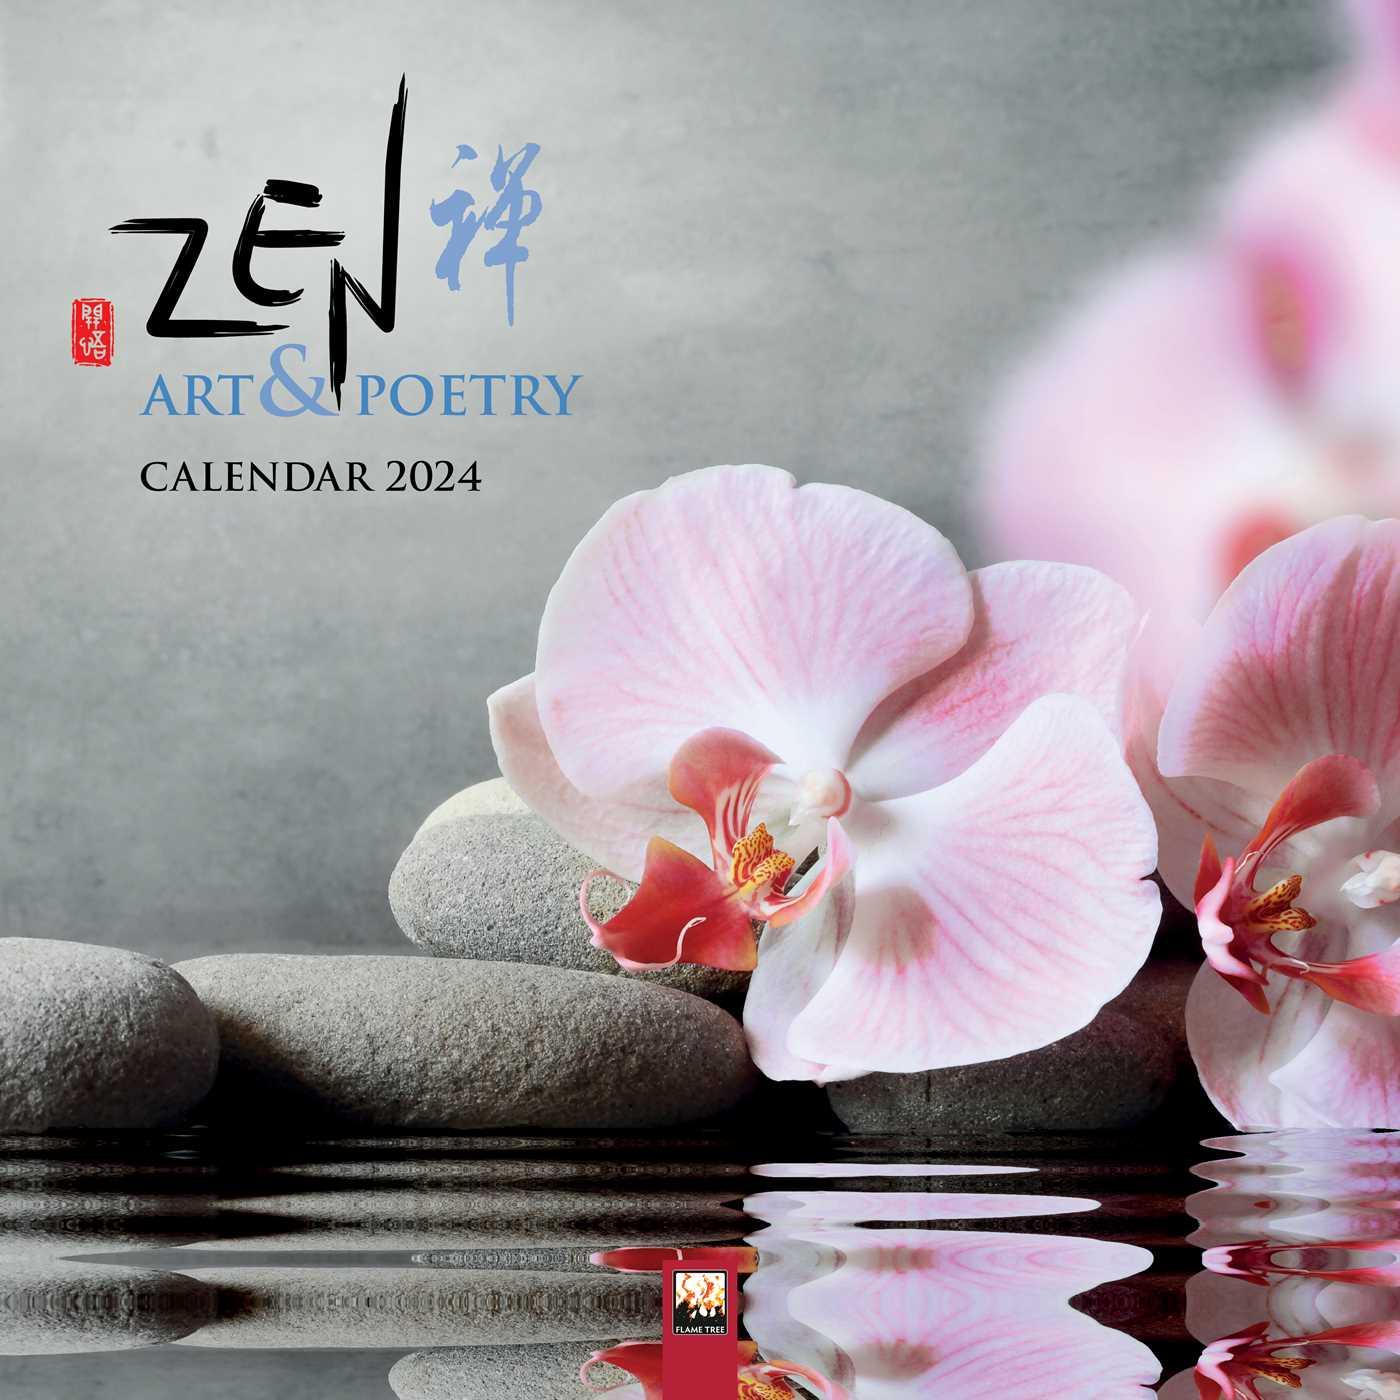 Kalendář/Diář Zen Art & Poetry Wall Calendar 2024 (Art Calendar) 